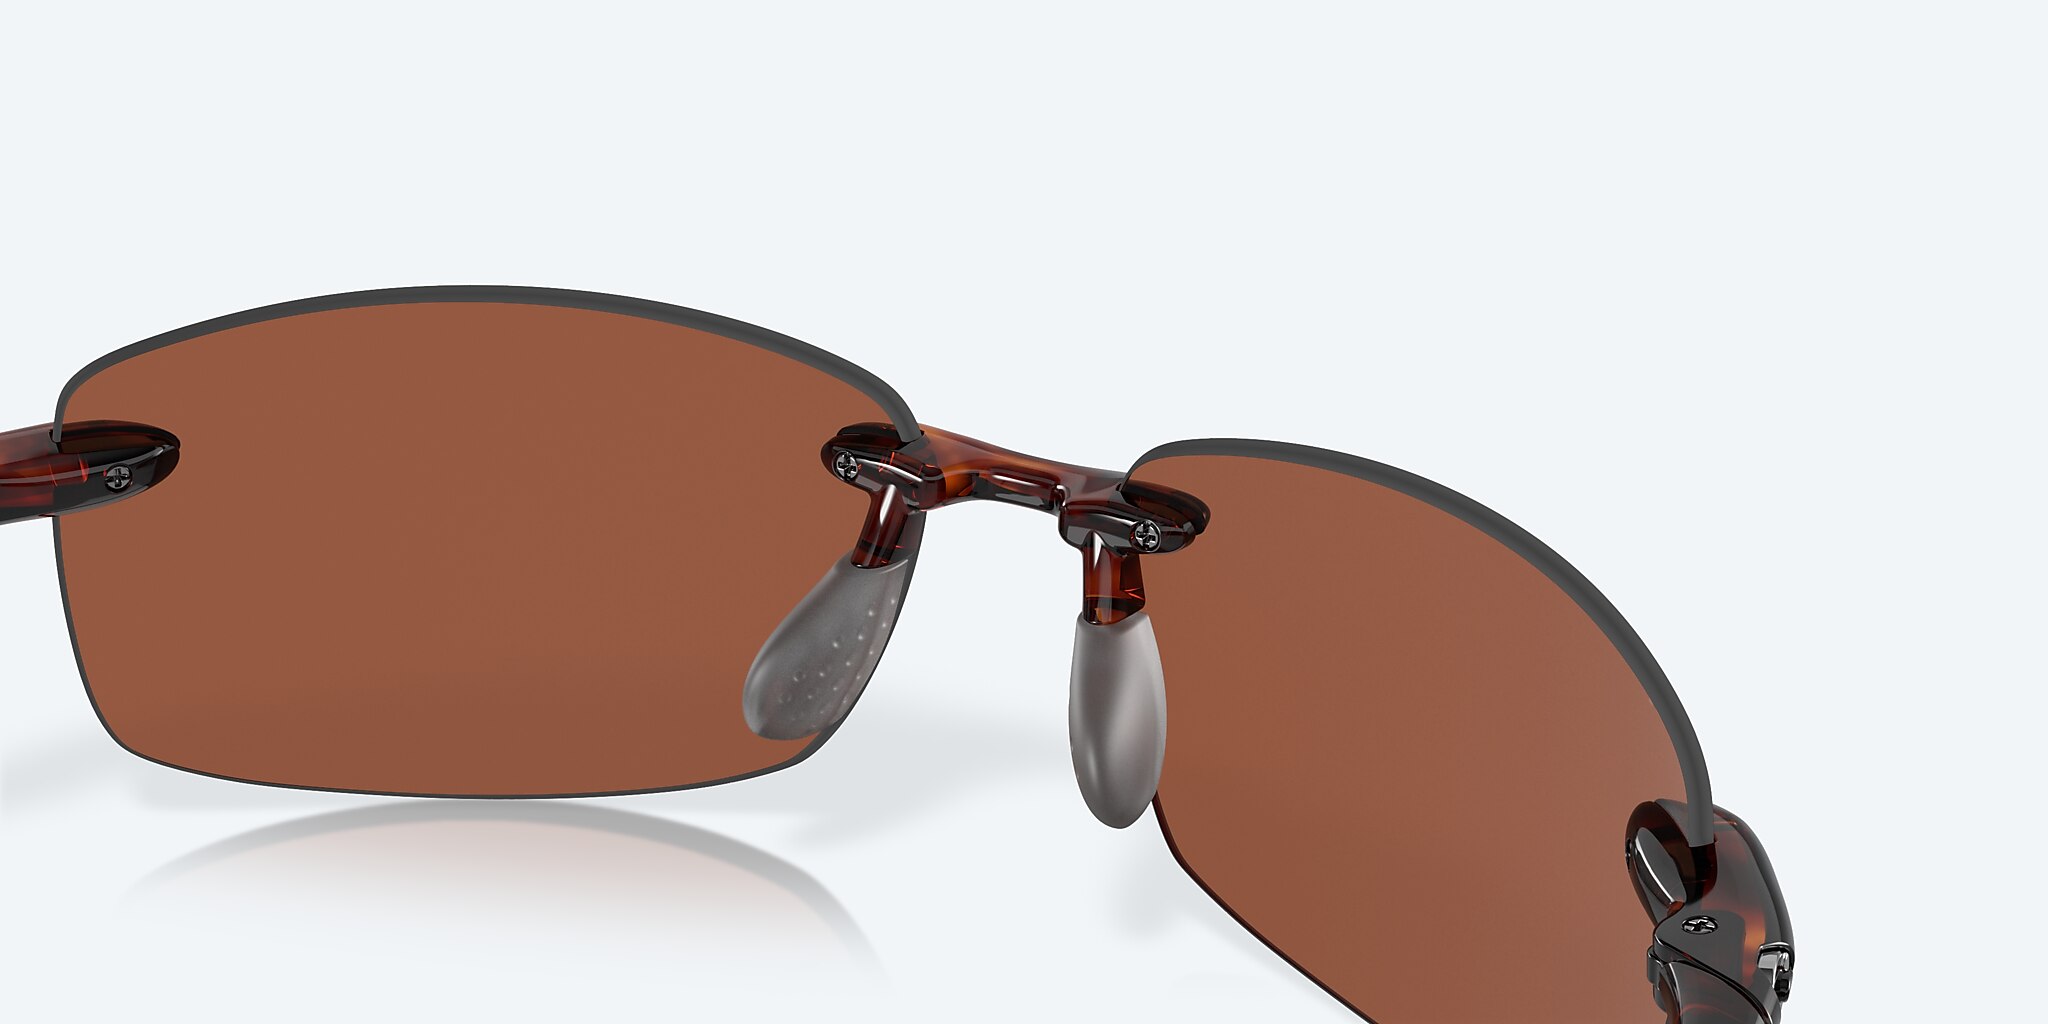 Costa Del Mar Ballast Sunglasses Tortoise Copper 580P